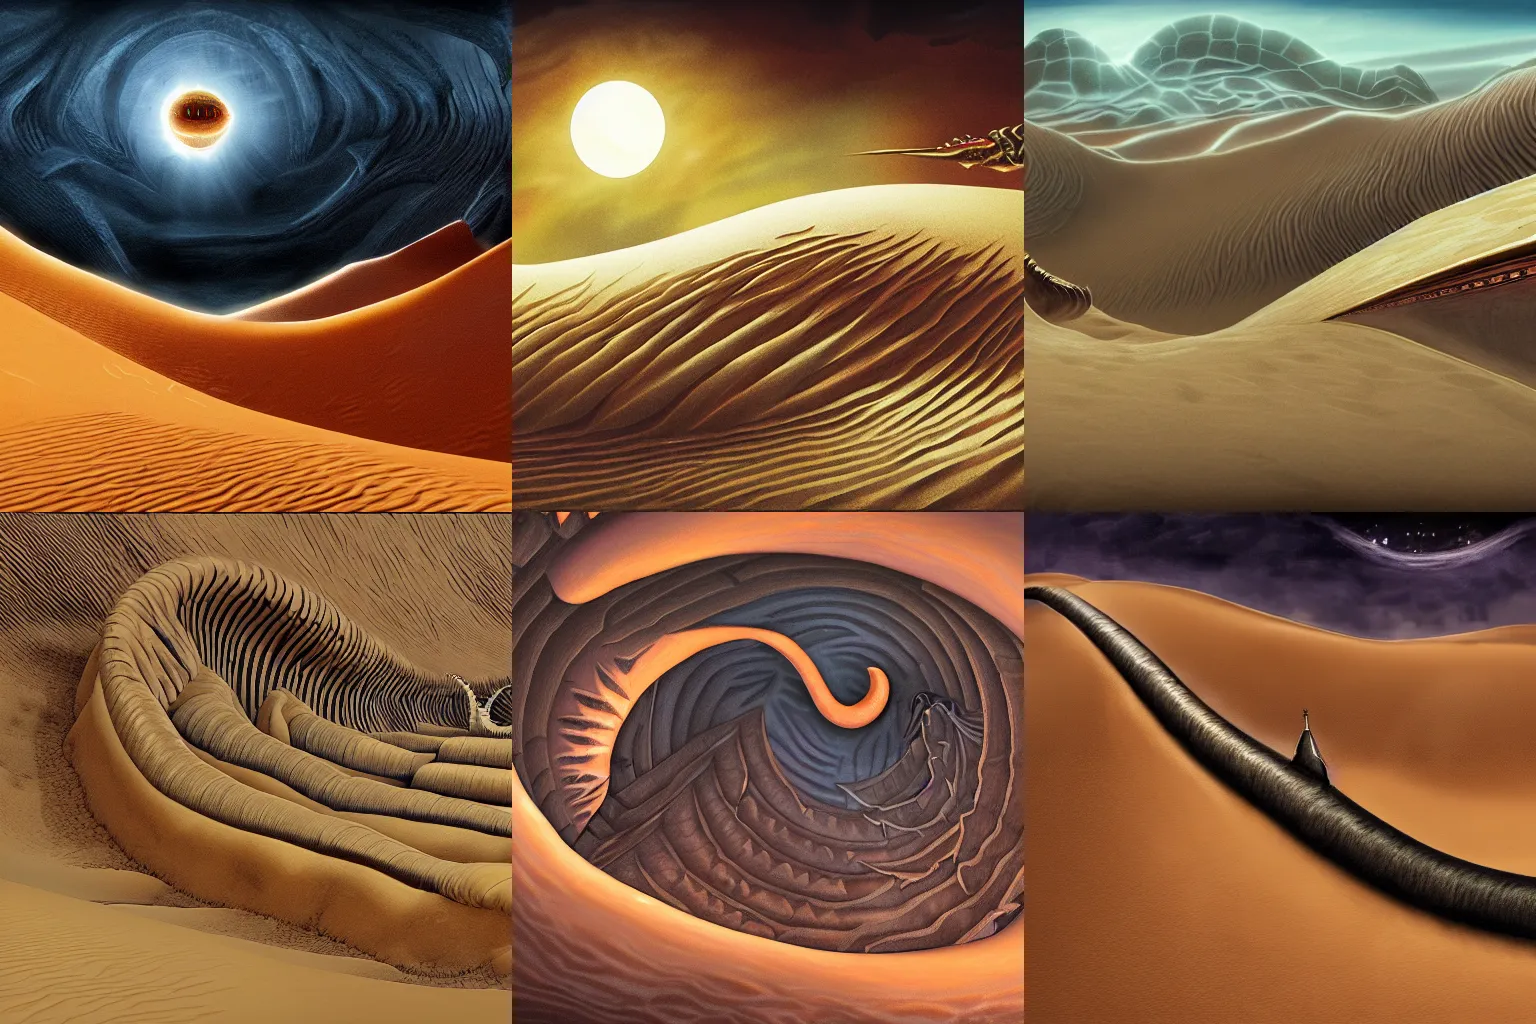 Prompt: dune sandworm fantasy epic 4k desert highly detailed fanart